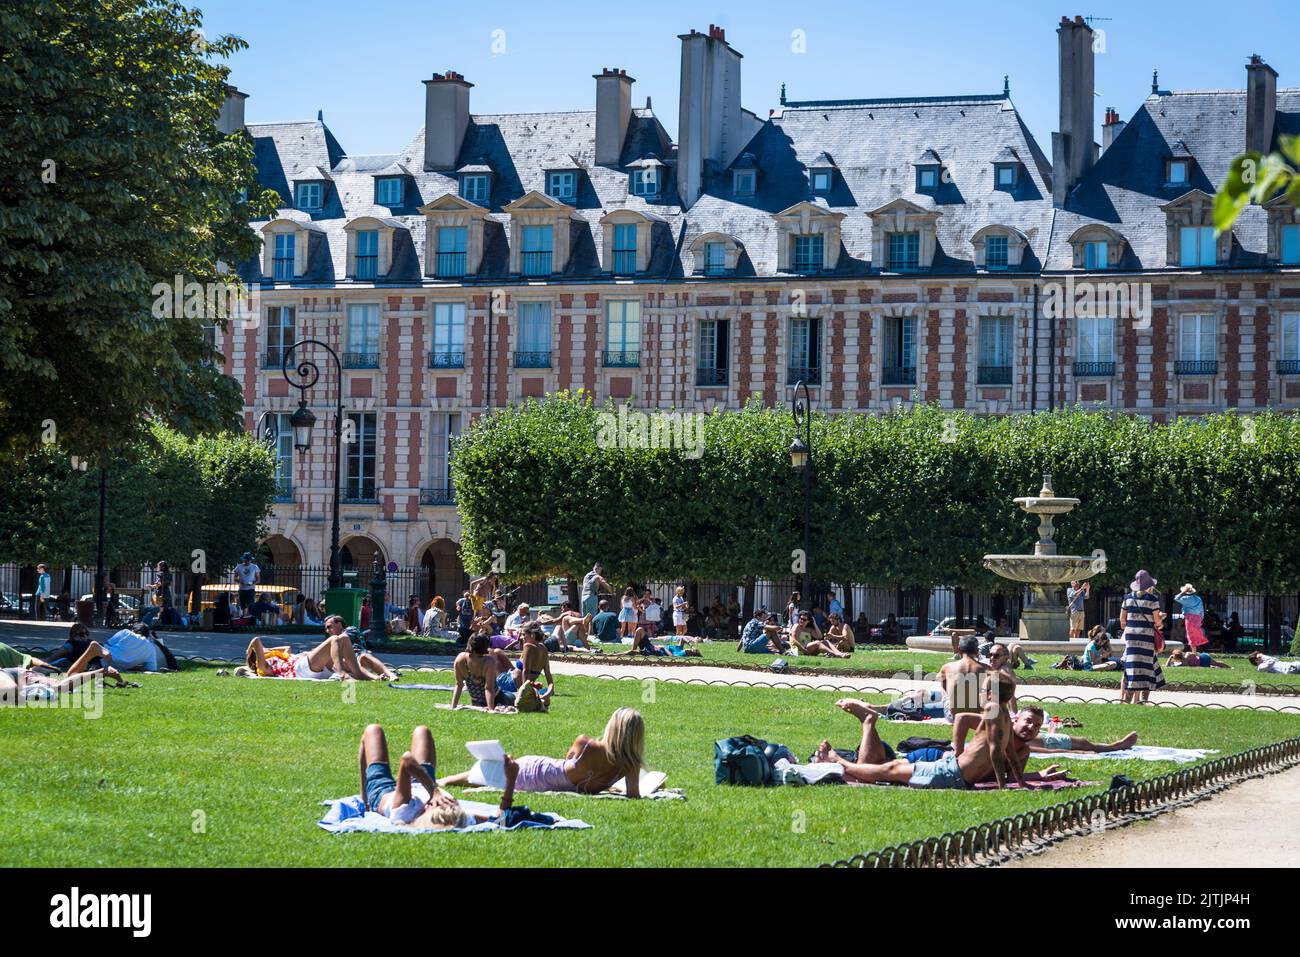 Personnes se détendant dans le parc central de la place des Vosges, la plus ancienne place planifiée de Paris, construite au 17th siècle dans le quartier du Marais, par Banque D'Images